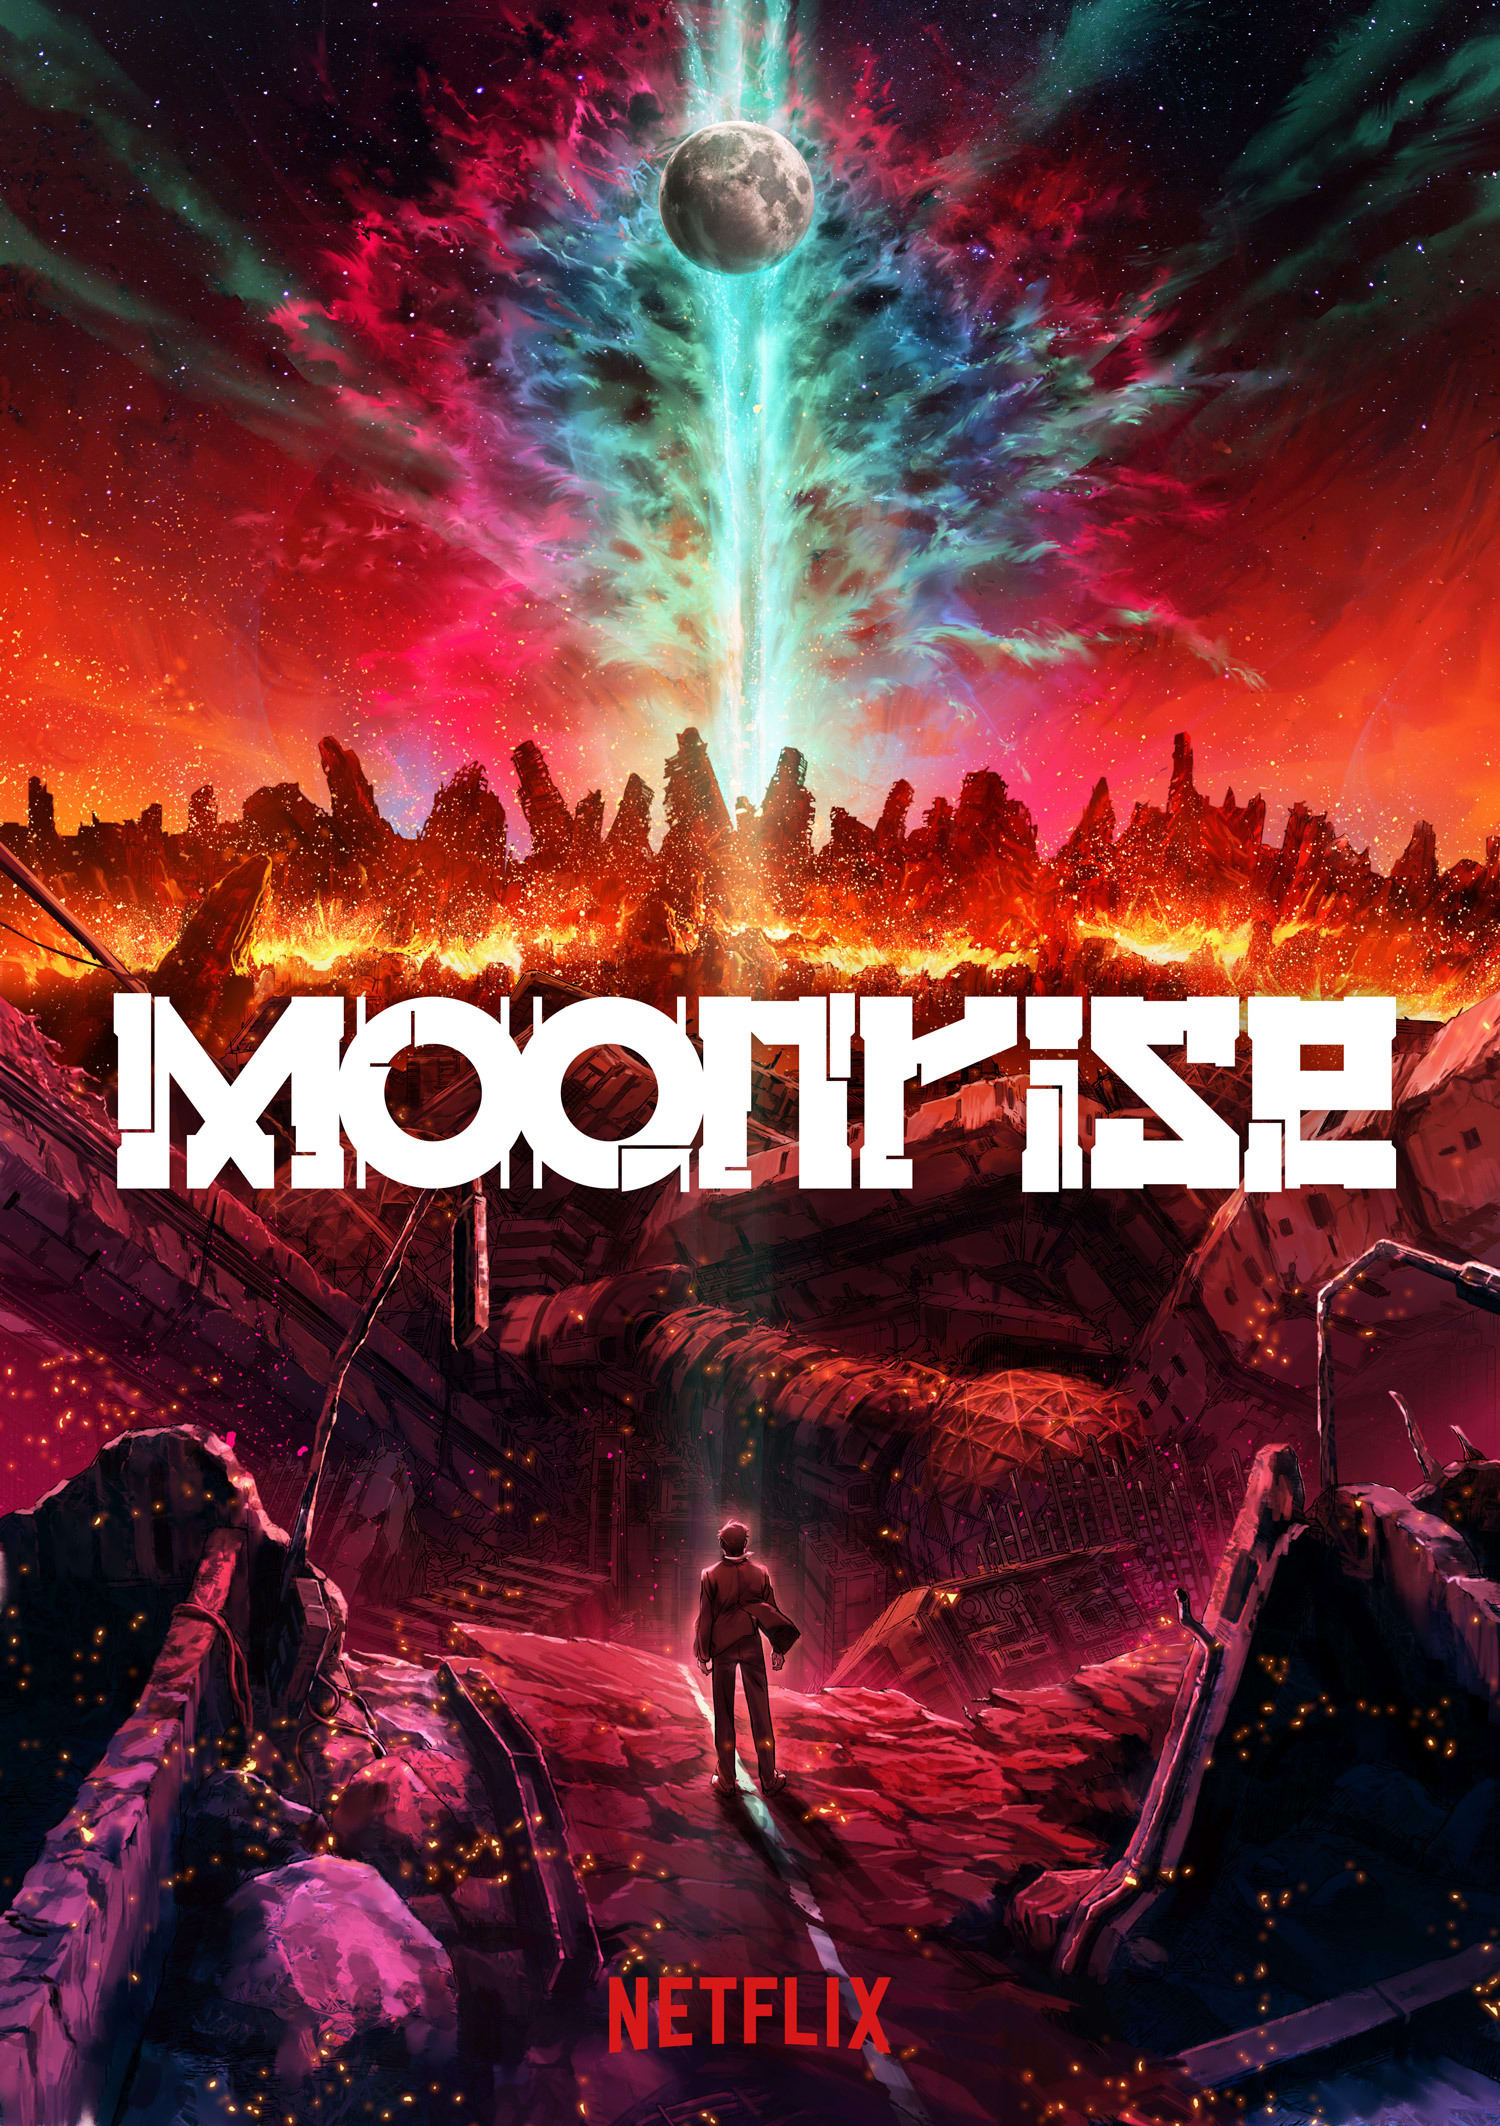 Netflix announces new scifi anime series Moonrise